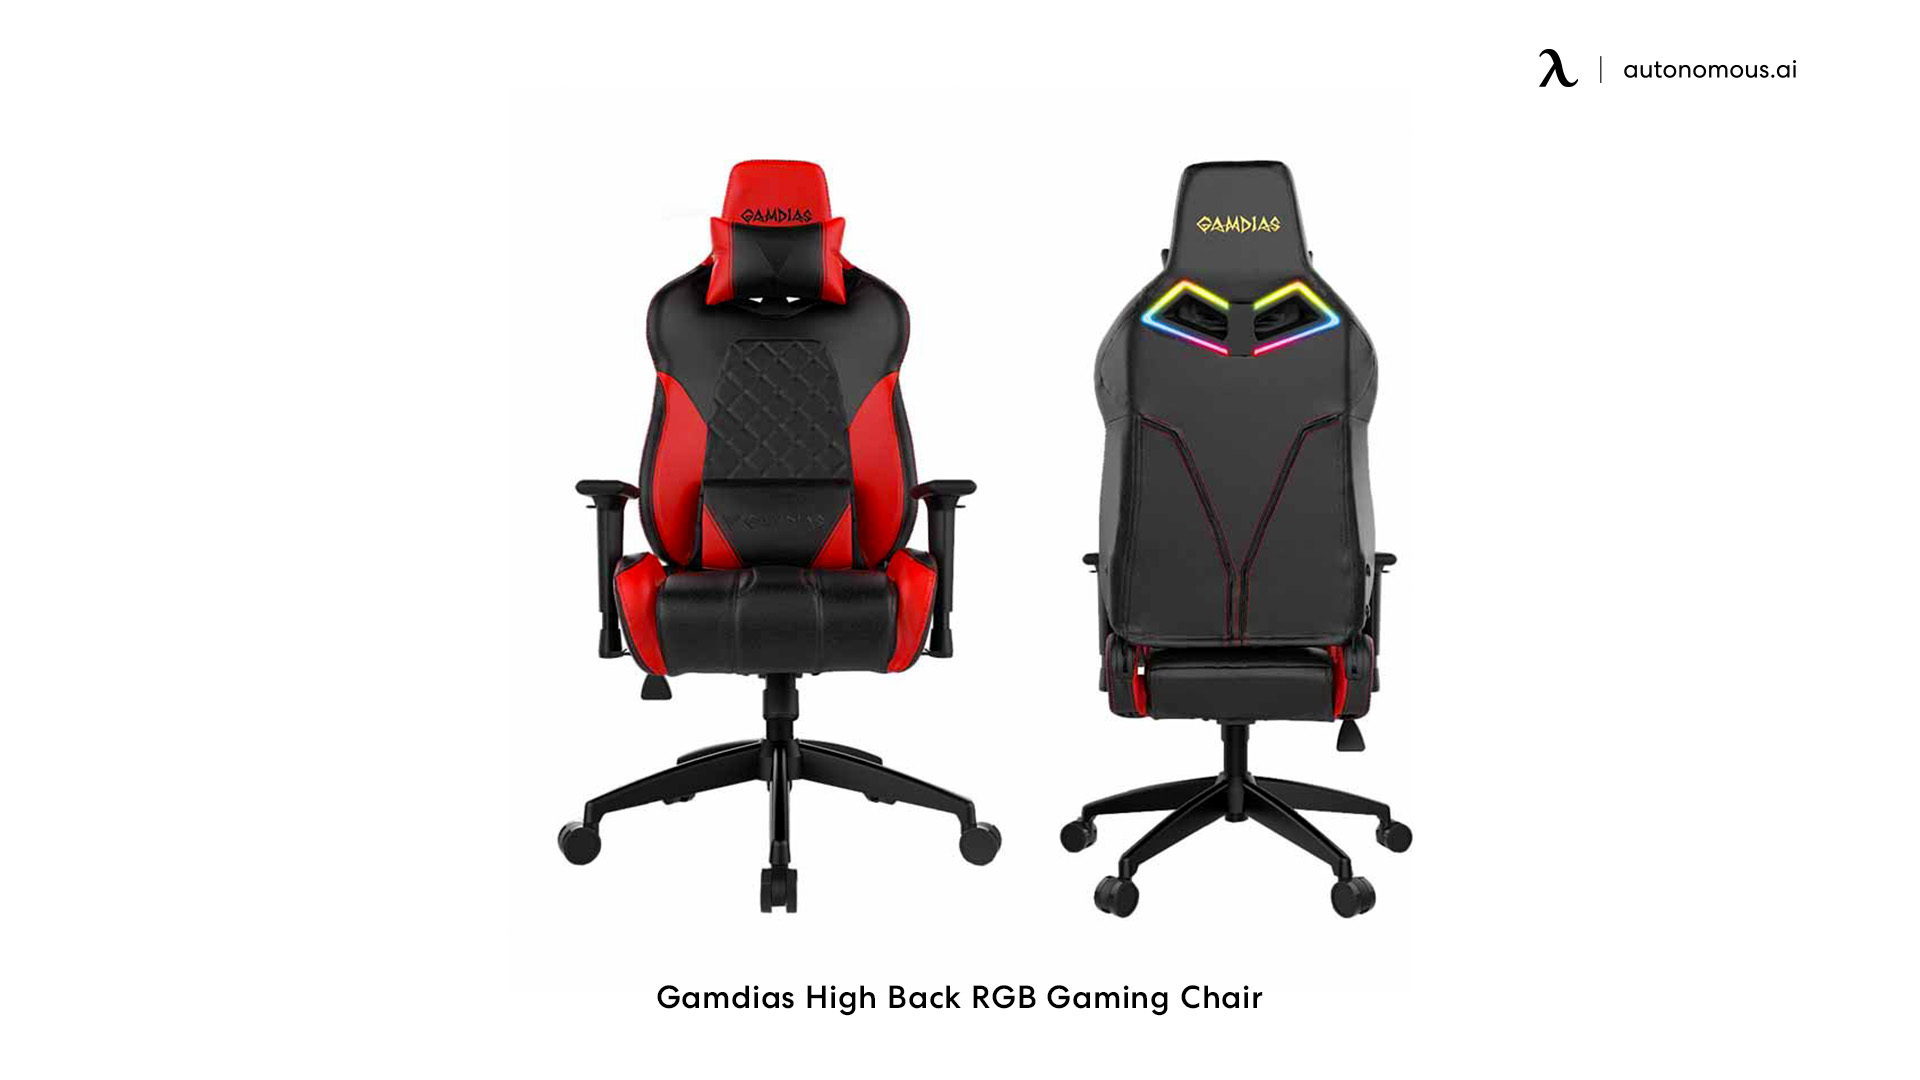 Gamdias High Back RGB Gaming Chair